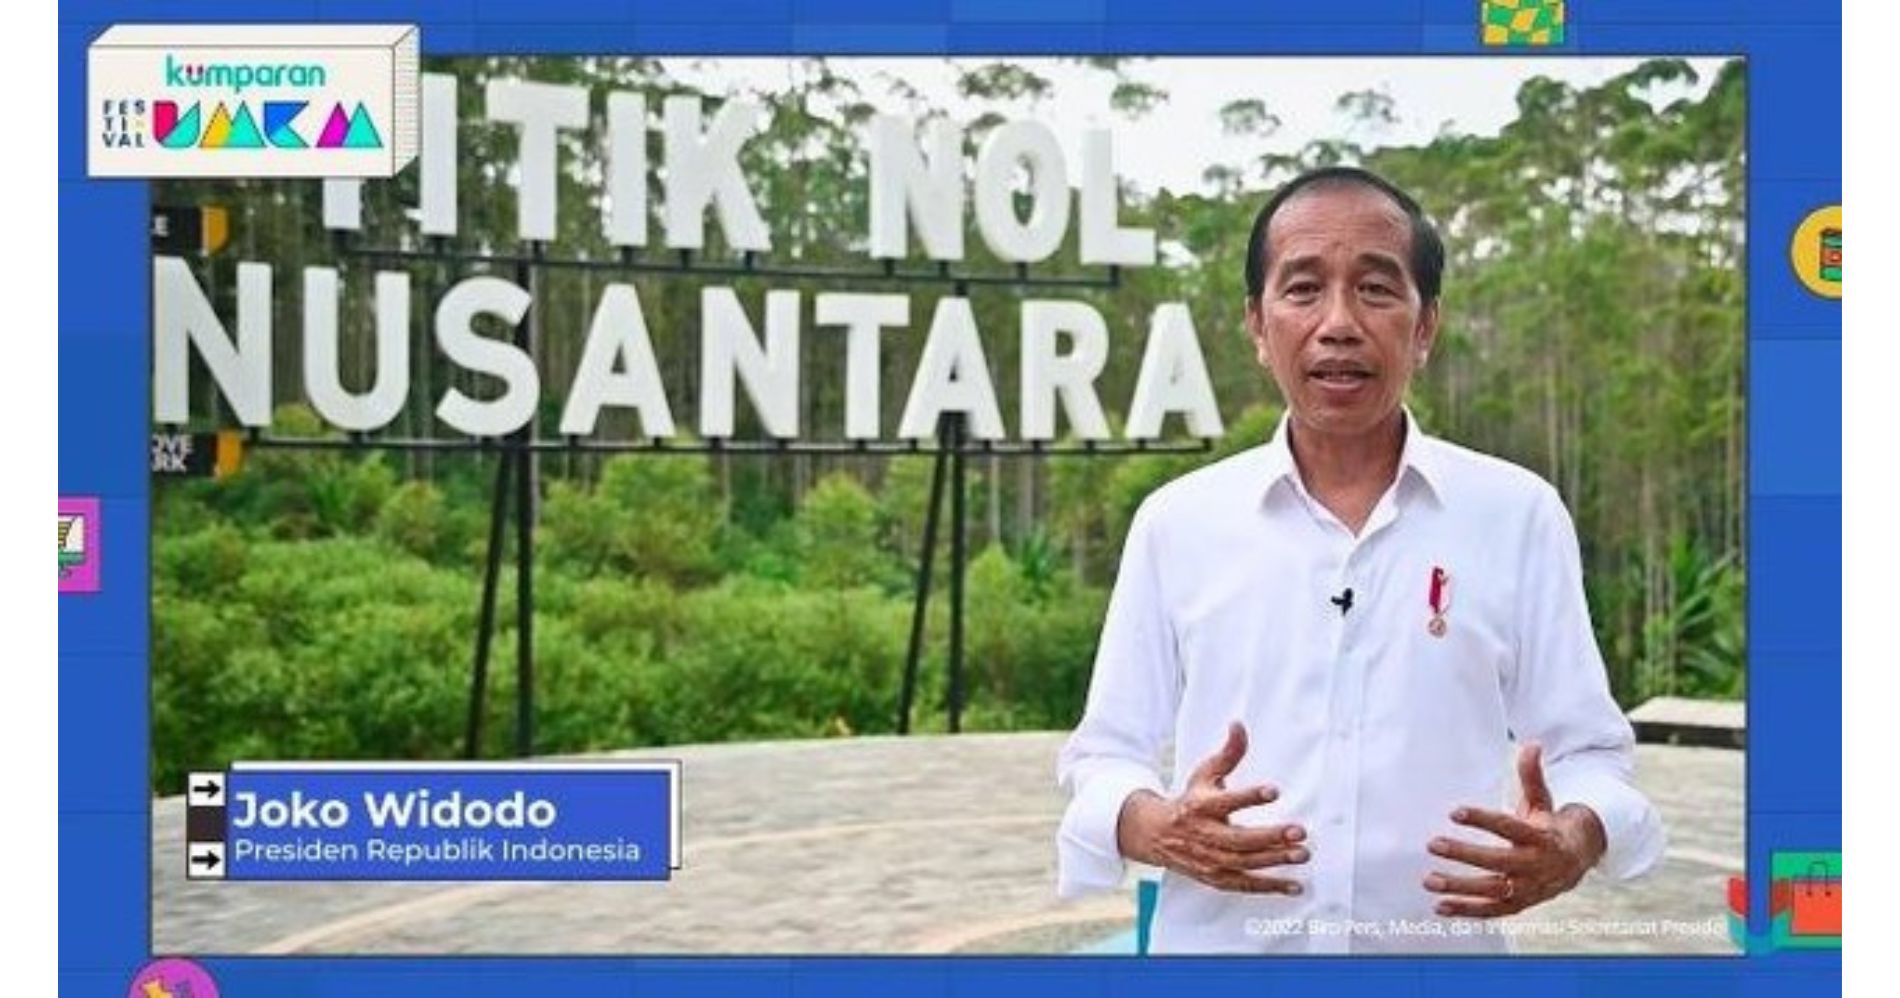 Sambutan Presiden Joko Widodo dalam Festival UMKM kumparan 2022 kumparanTemanUMKM. Dok kumparan.